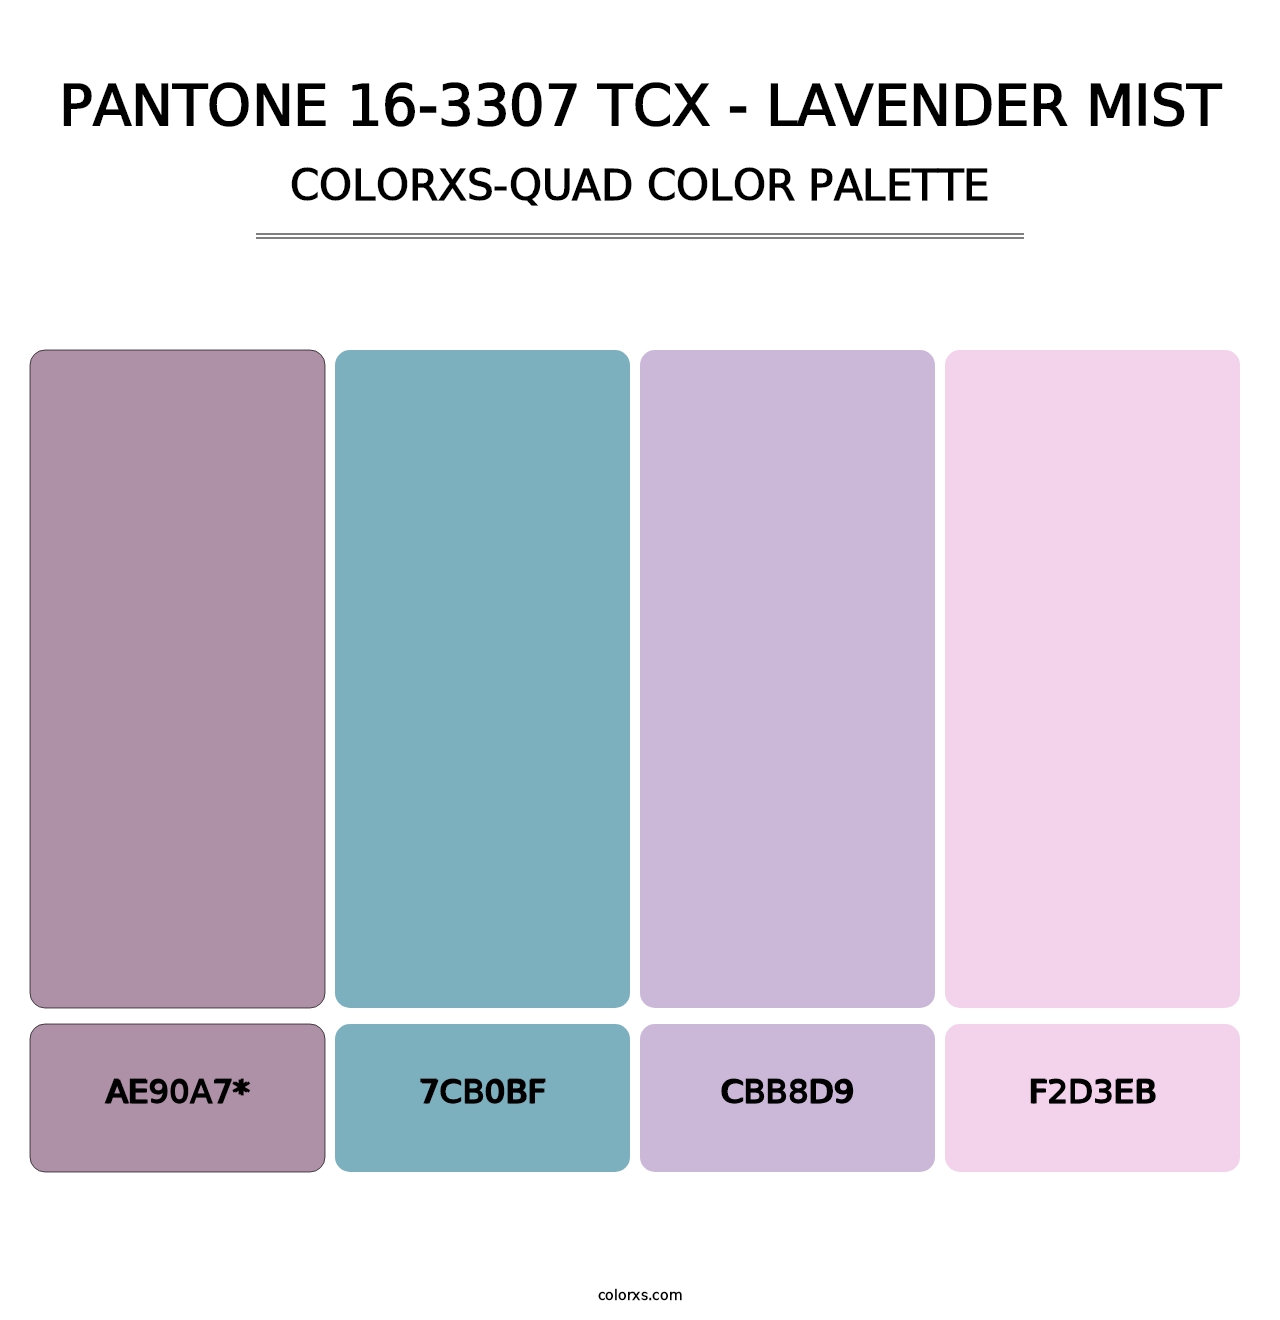 PANTONE 16-3307 TCX - Lavender Mist - Colorxs Quad Palette